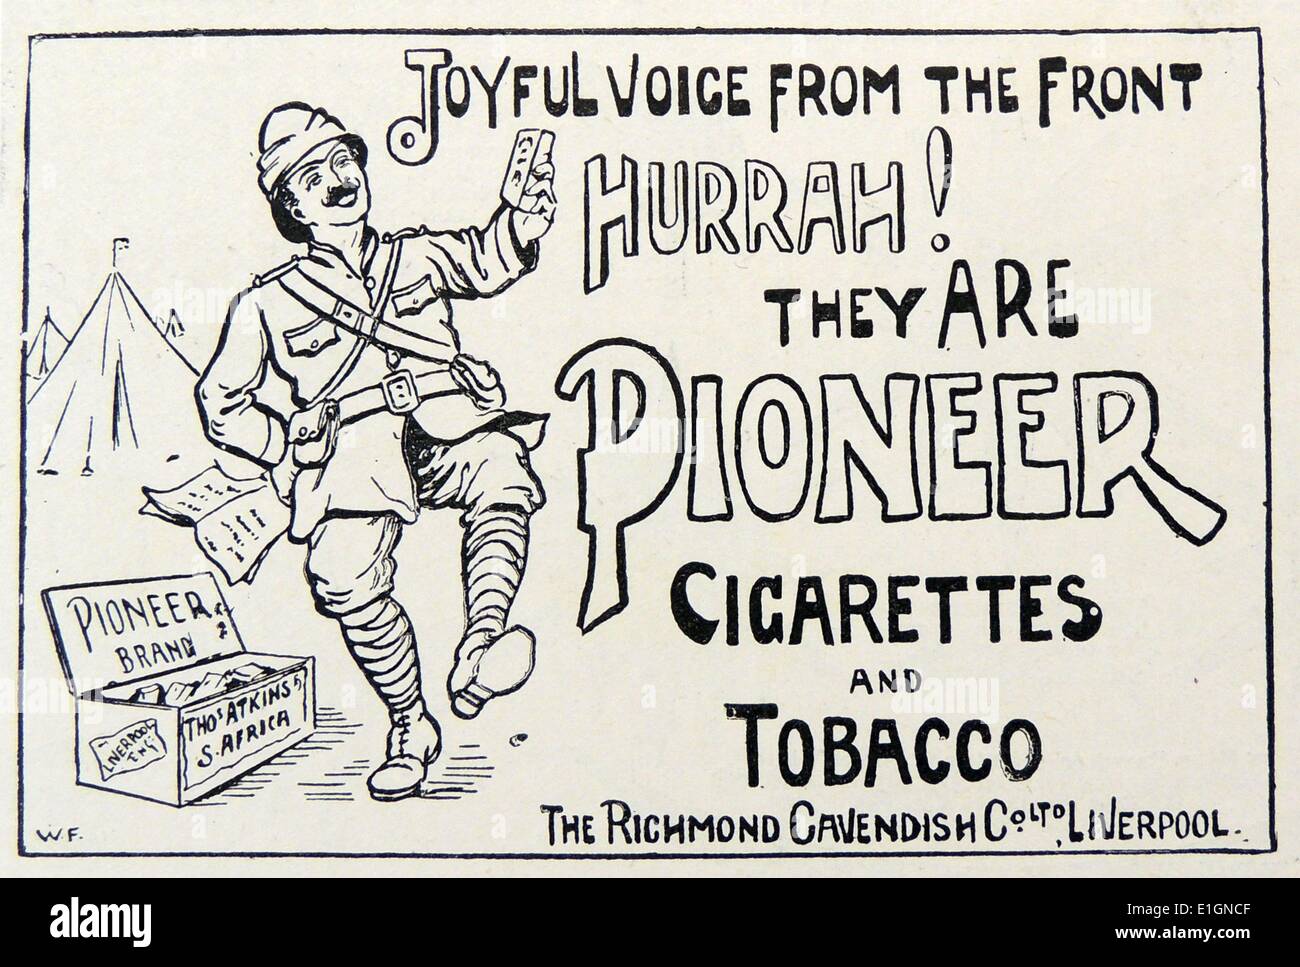 Publicité montrant un soldat britannique en Afrique du Sud pendant la Guerre des Boers, ravis de recevoir un paquet de cigarettes 'Pioneer'. La gravure, Londres, 1900. Banque D'Images